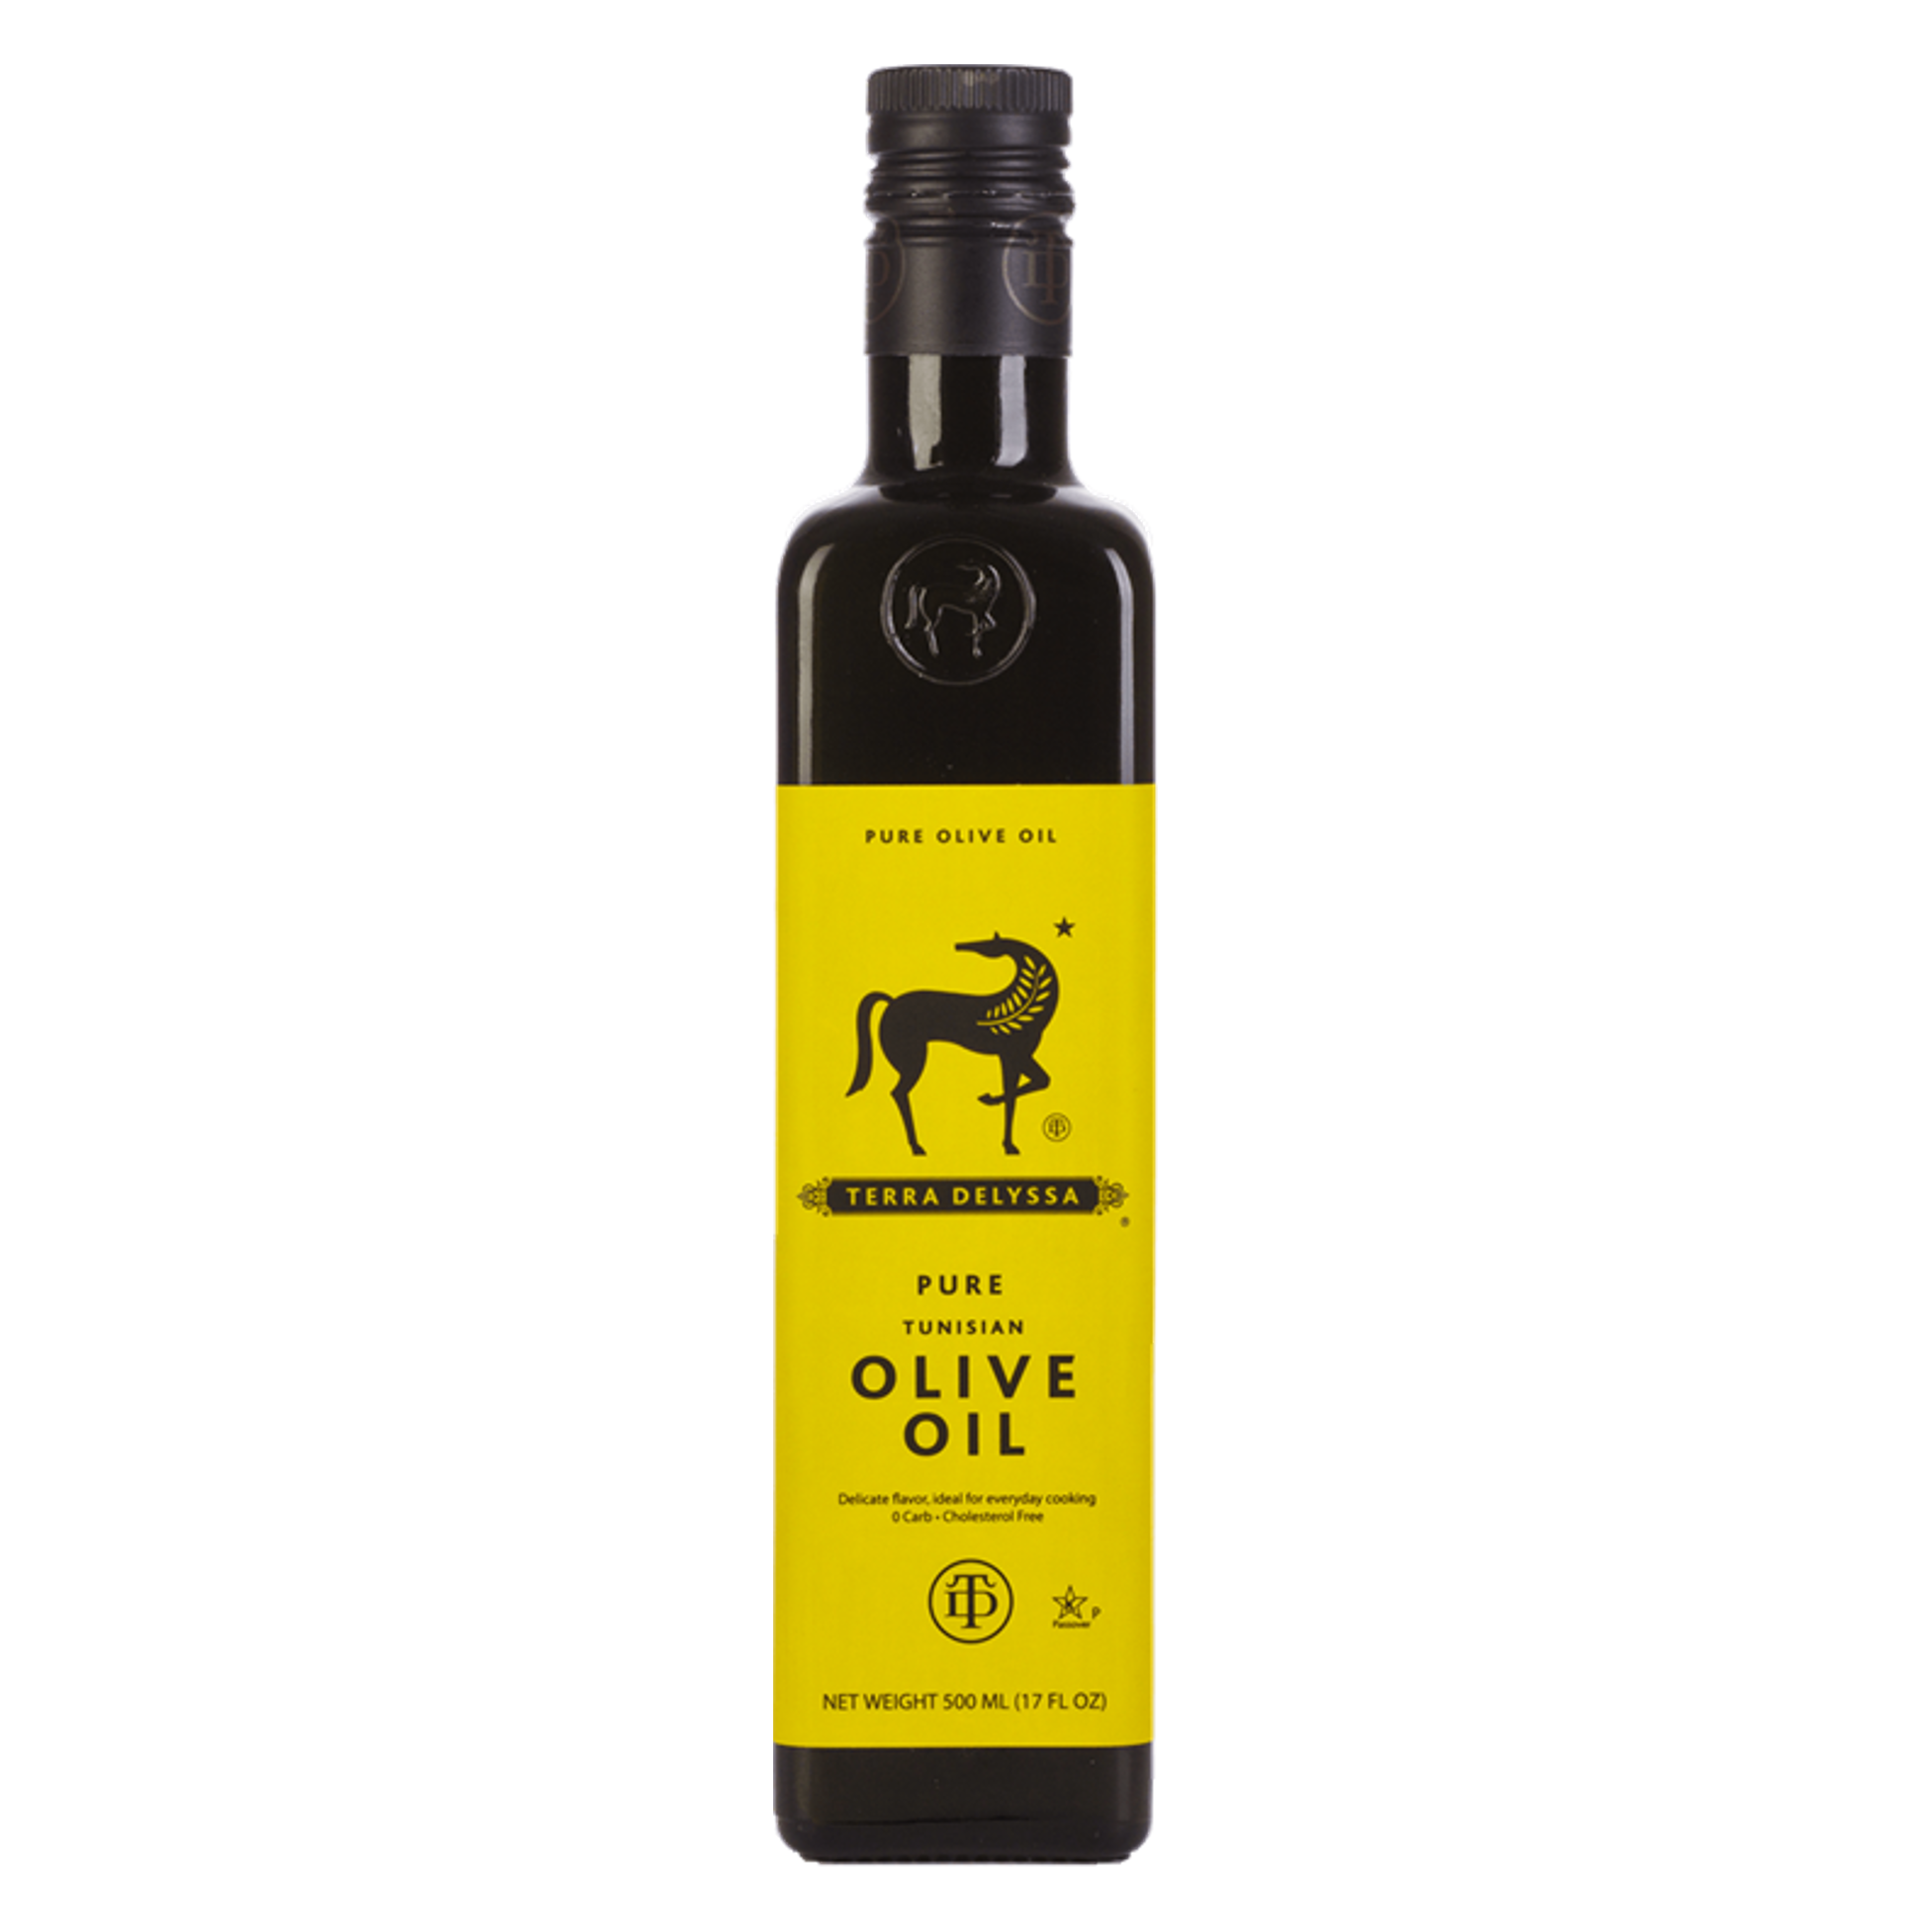 Terra Delyssa Tunisian Extra Virgin Olive Oil